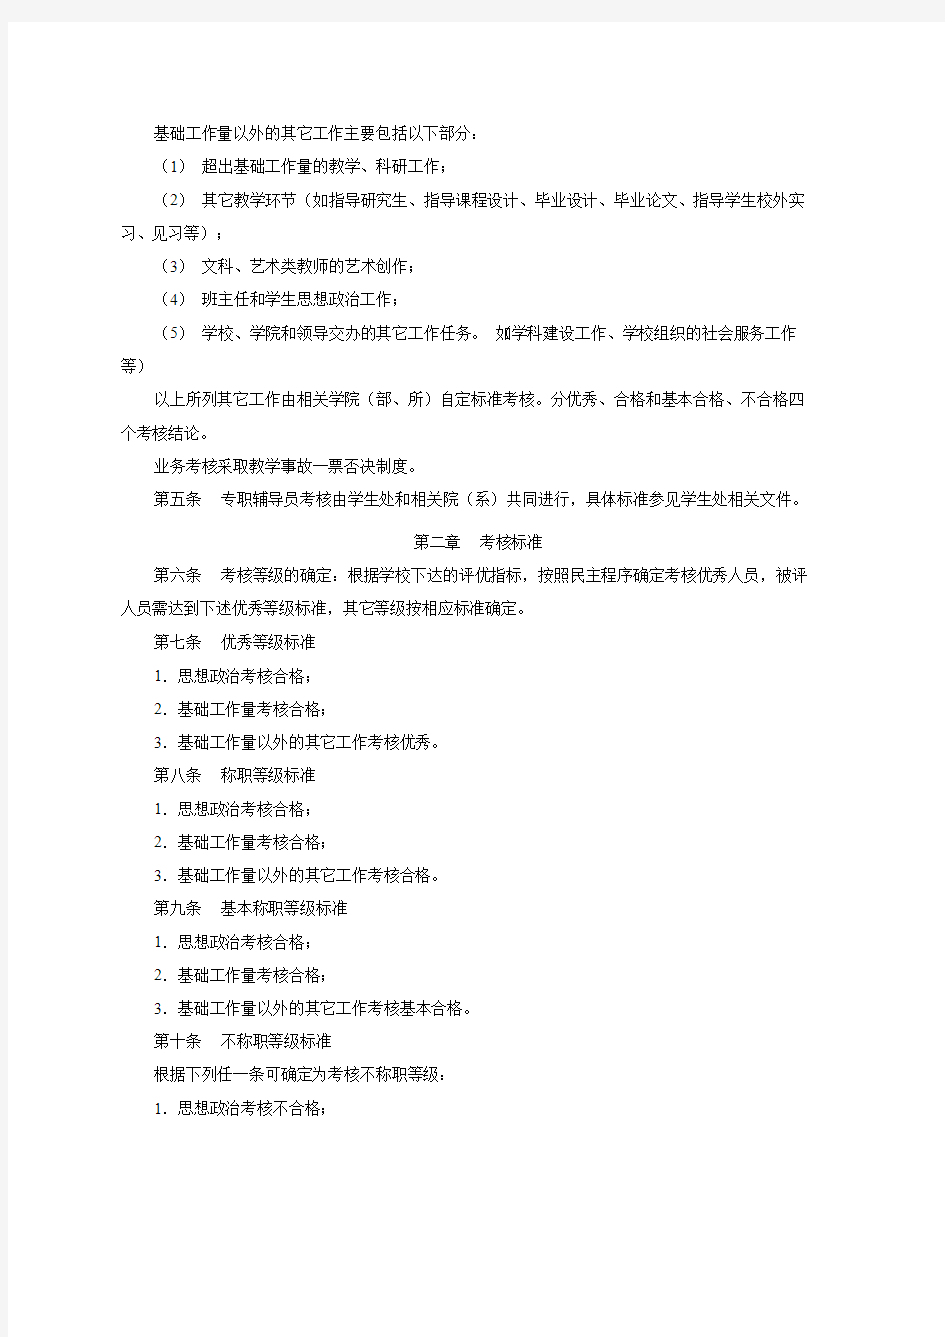 中国传媒大学教师考核办法